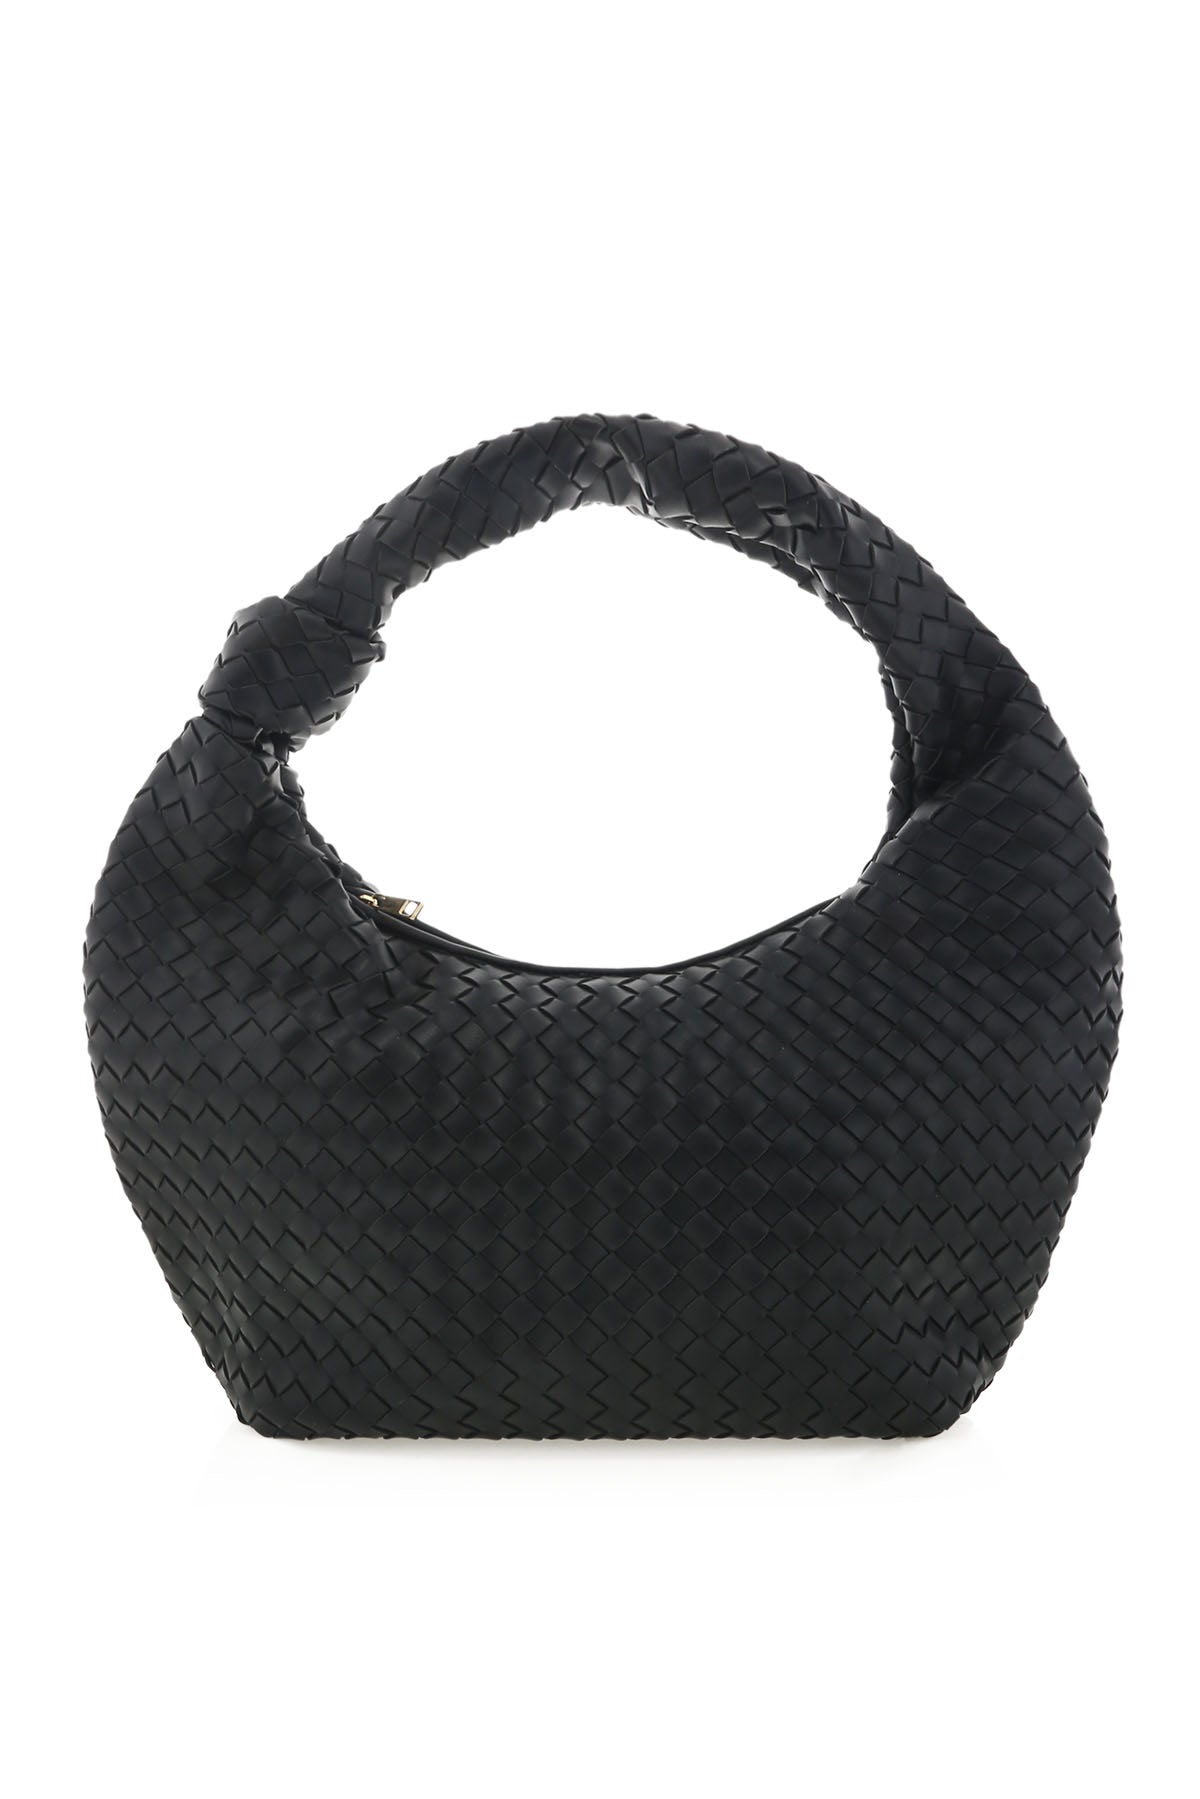 Billini - Kenya Shoulder Bag - Black - Front